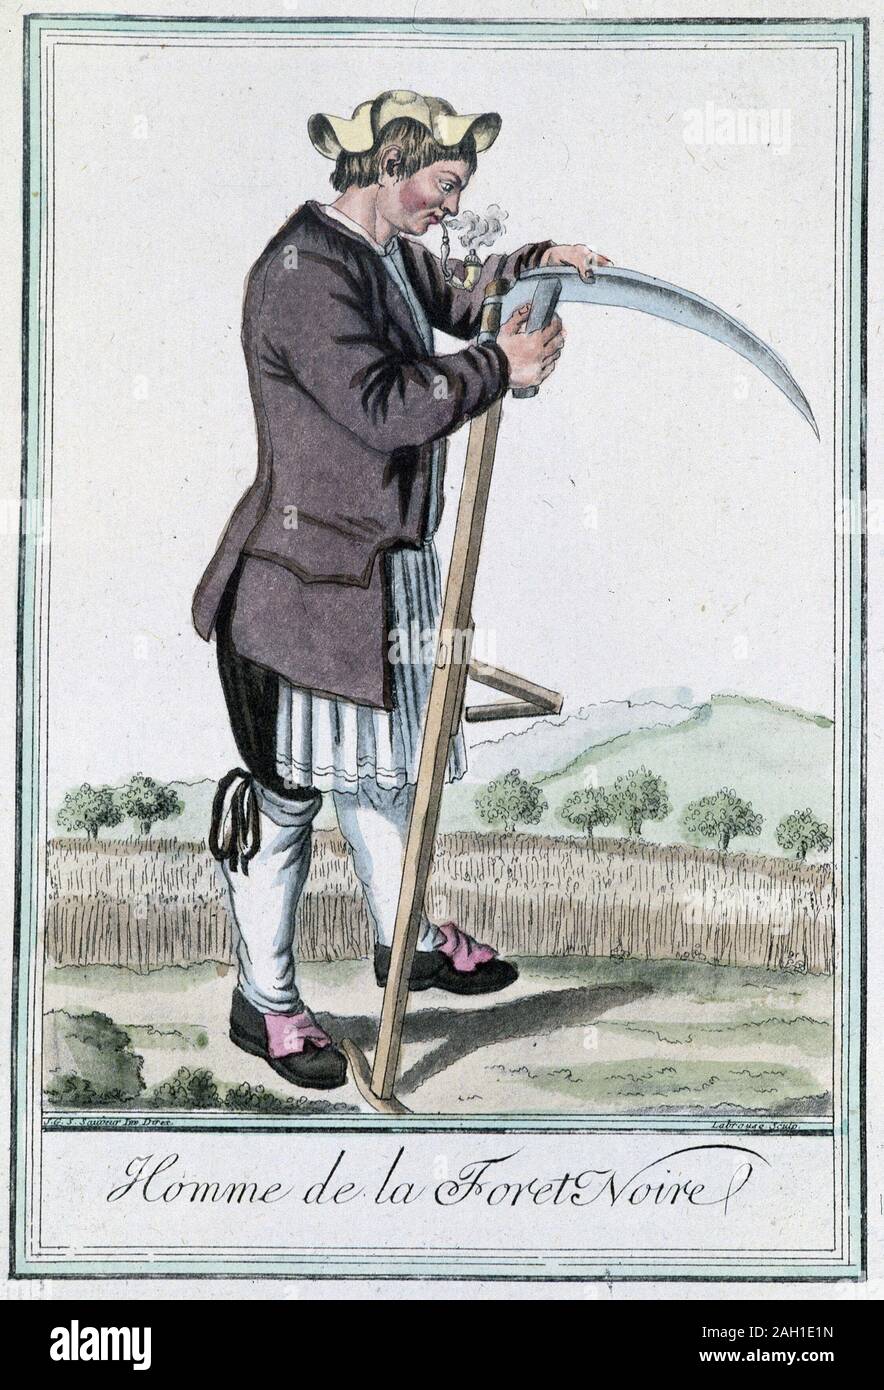 Homme de la fort noire, aiguisant sa faux pour la moisson - nell'Encyclopedie des voyages " par Grasset St Sauveur, ed. Deroy, Parigi, 1796 Foto Stock